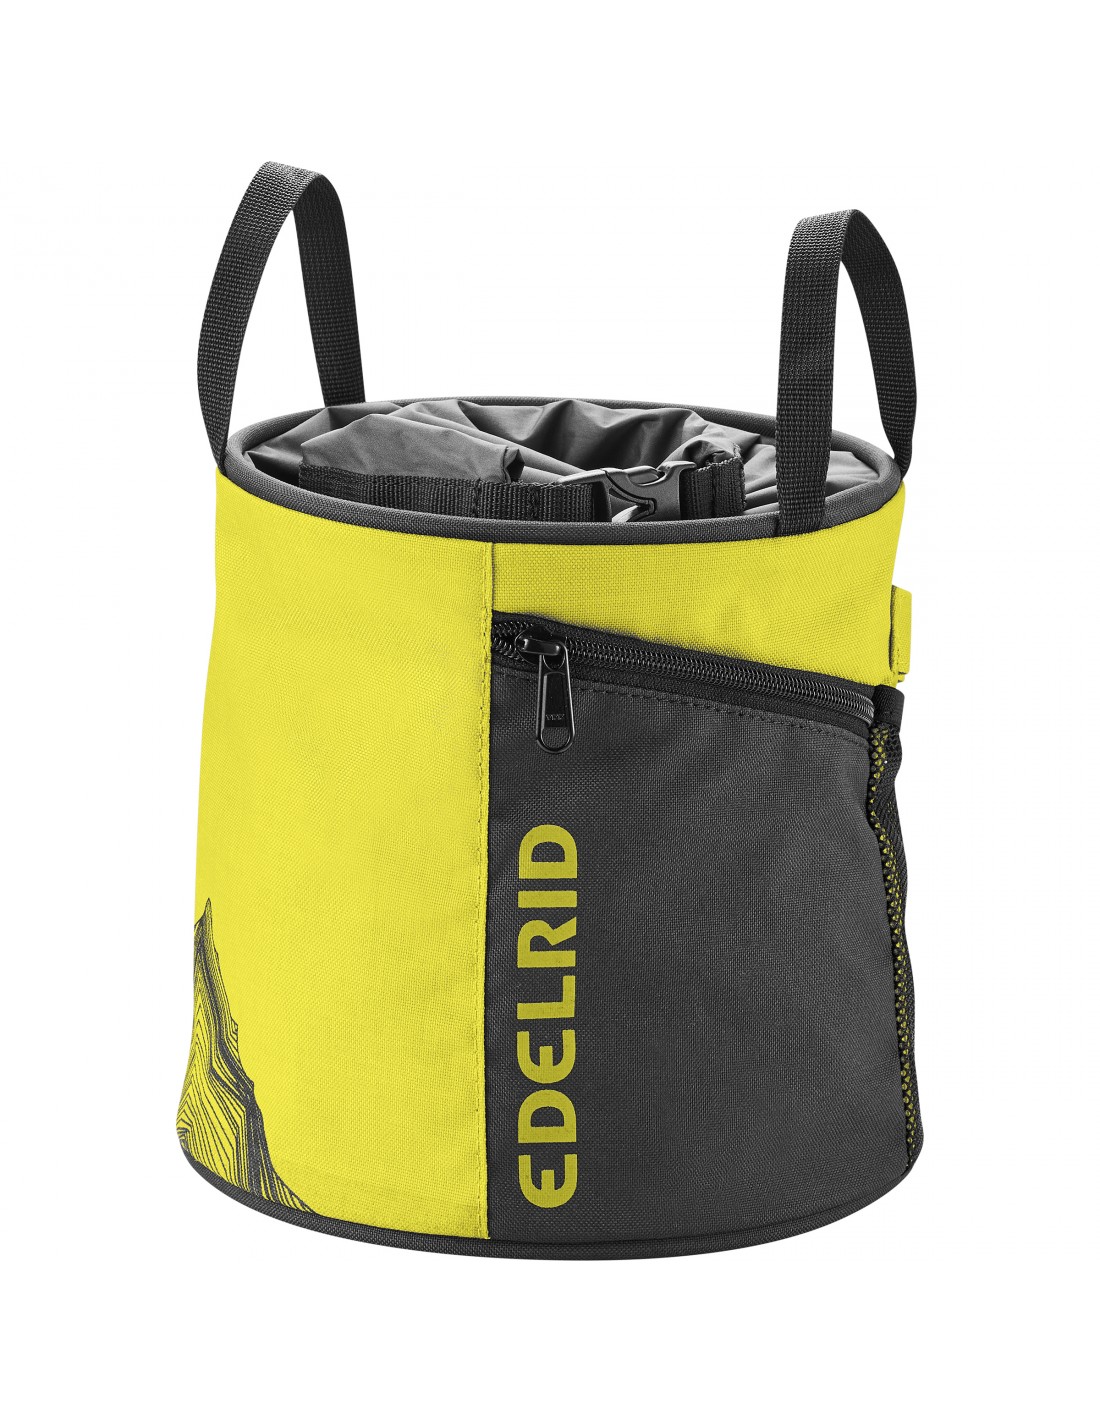 Edelrid Chalkbag Boulder Bag Herkules, wasabi Chalkbag Verwendung - Bouldern, Chalkbag Farbe - Schwarz/Gelb, von Edelrid